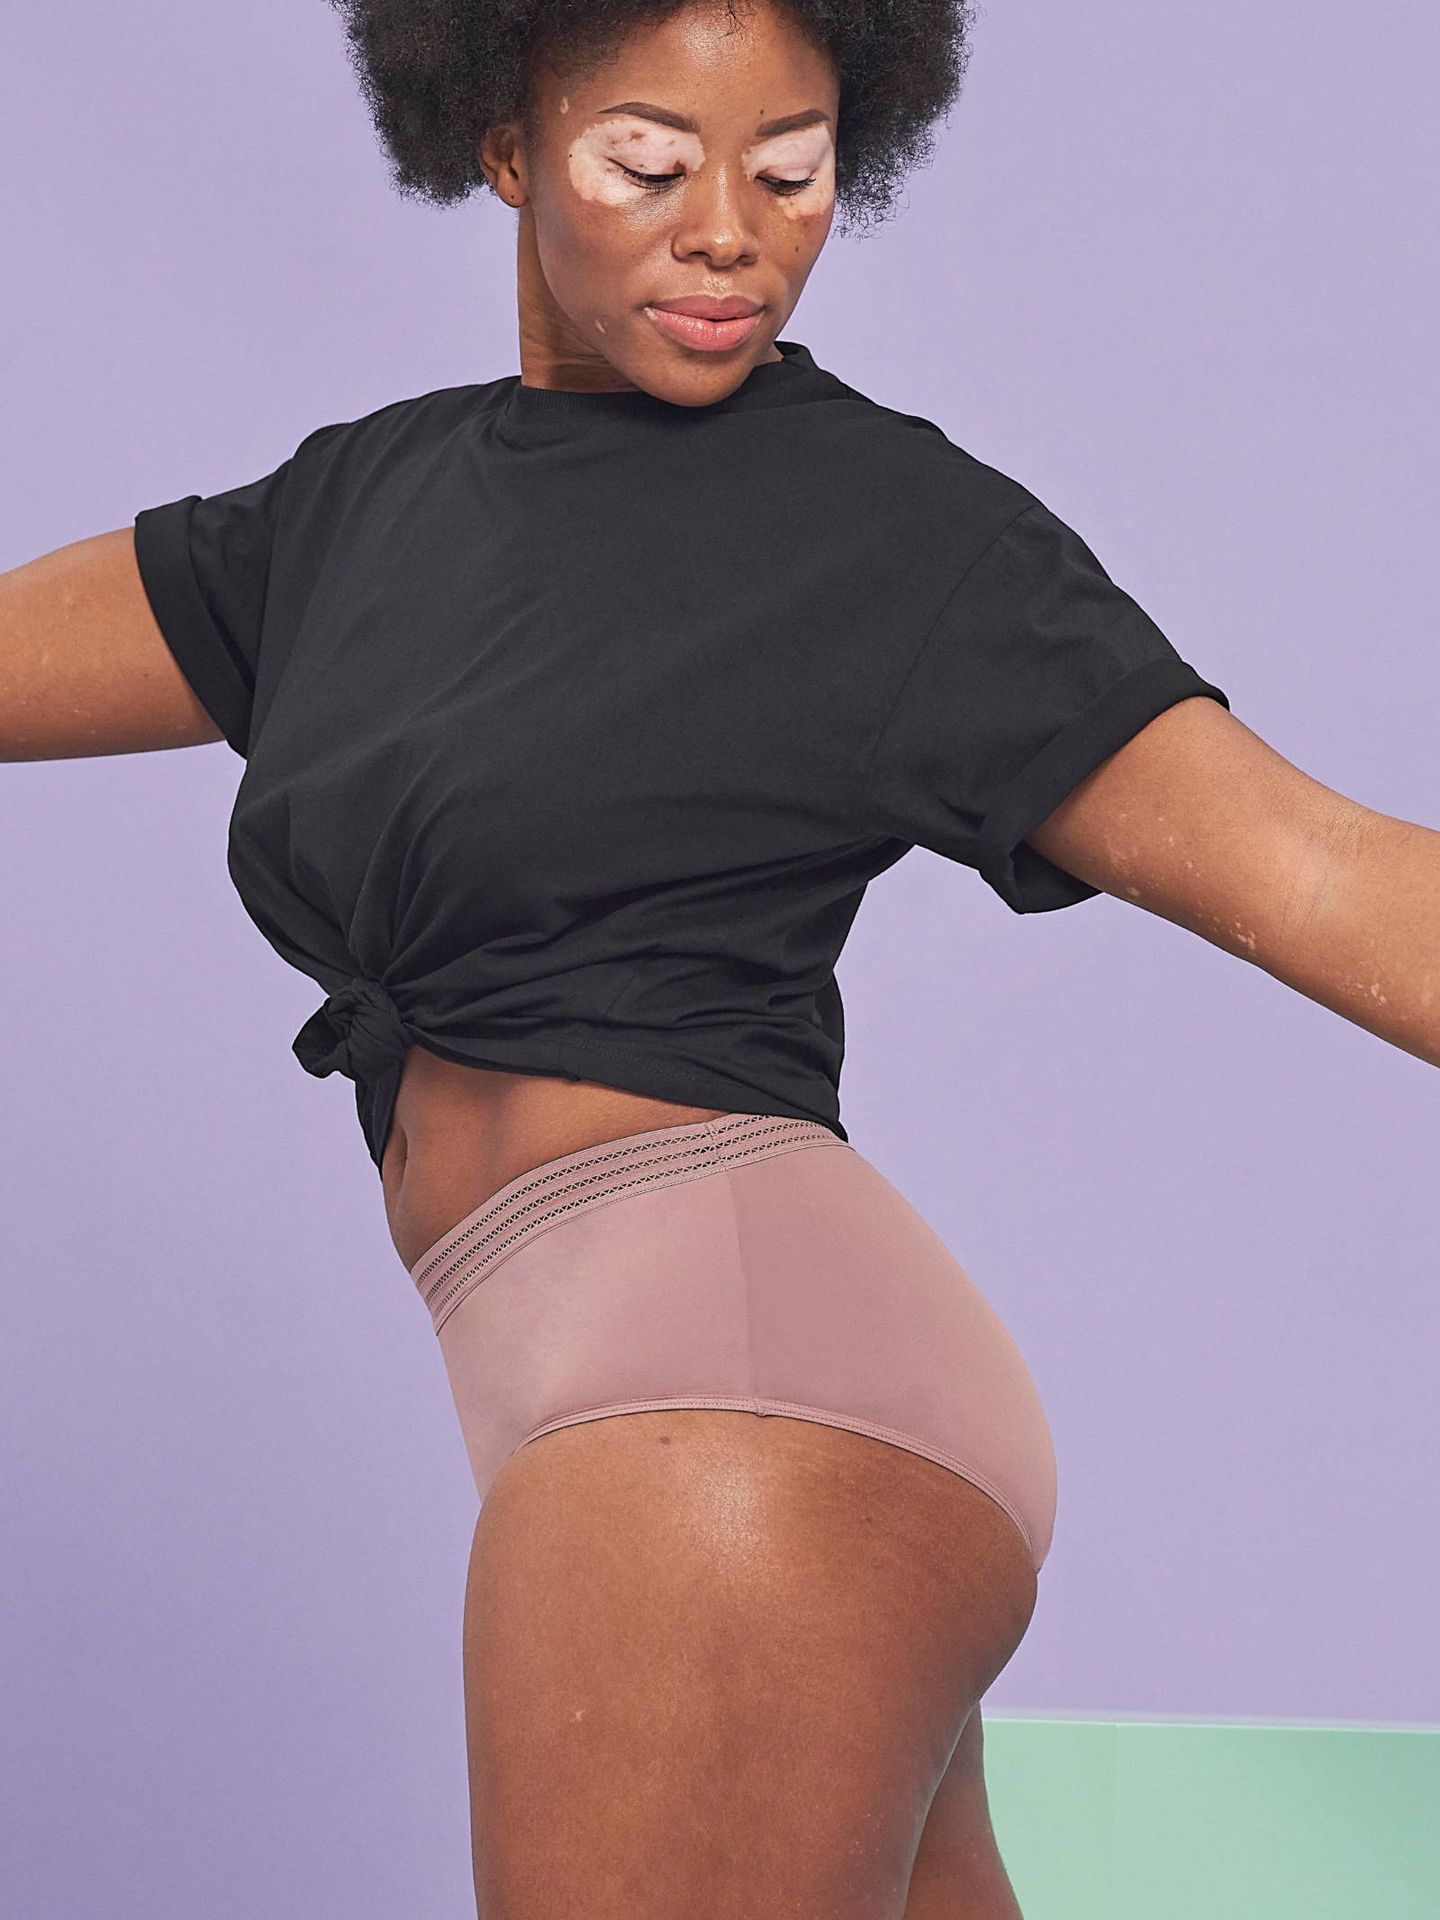 Primark saca a la venta una colección de ropa interior menstrual low cost. (Cortesía)